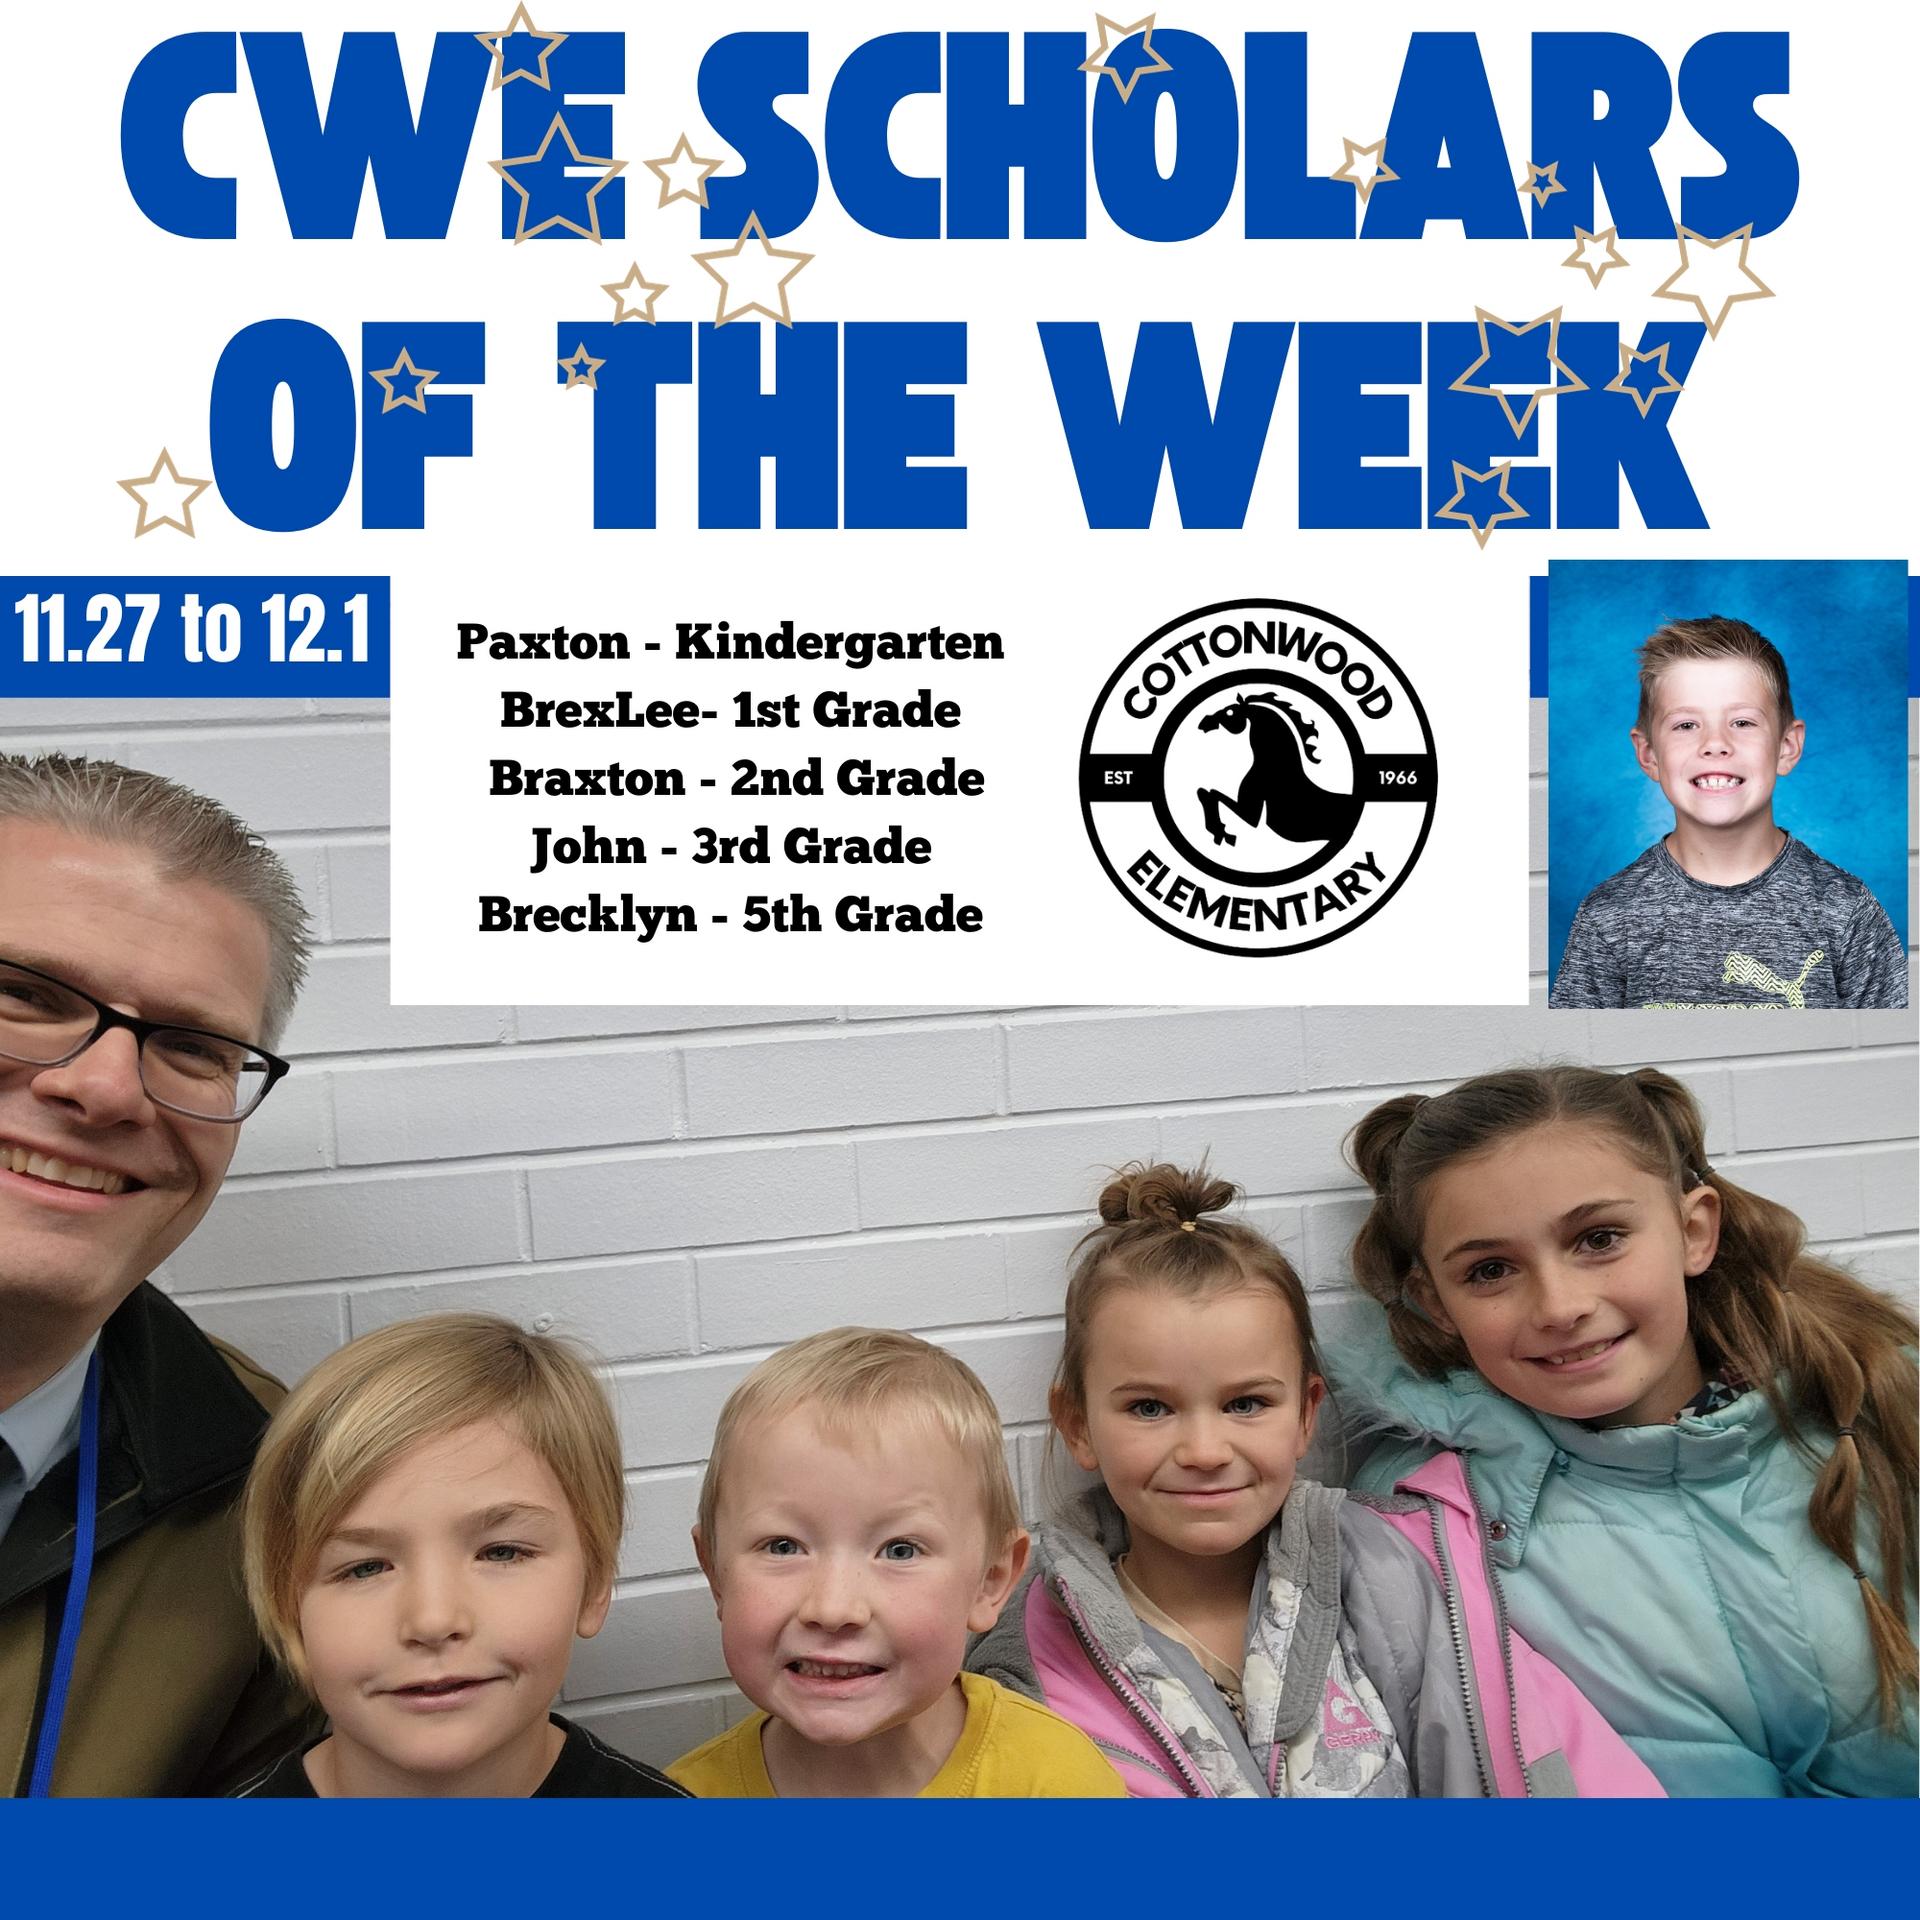 CWE-Scholars-of-the-Week-11.27-to-12.1.jpg